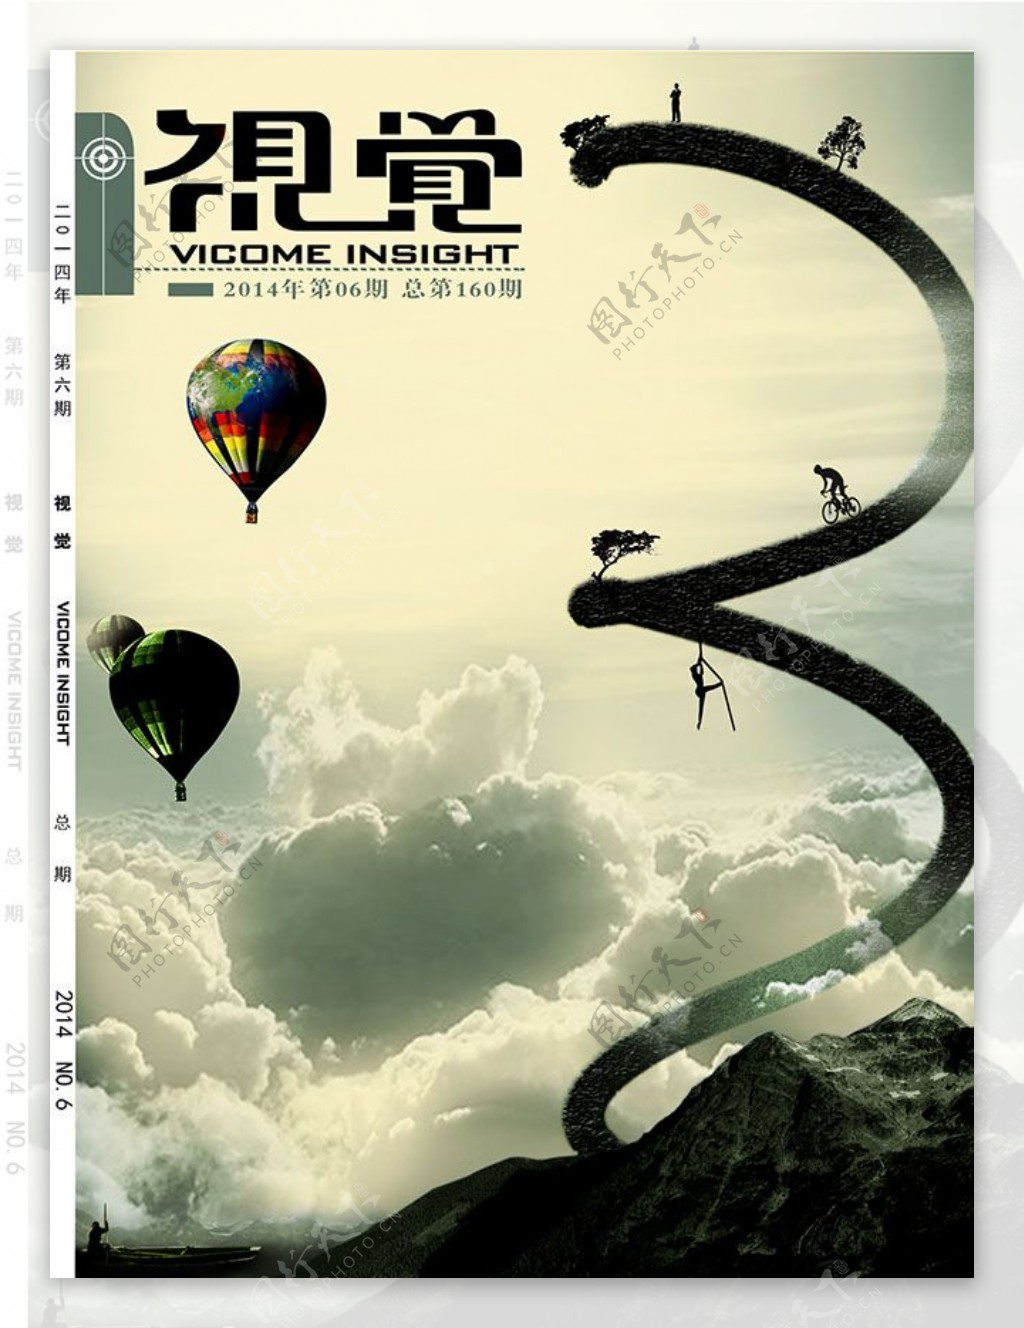 视觉杂志封面设计模板psd素材